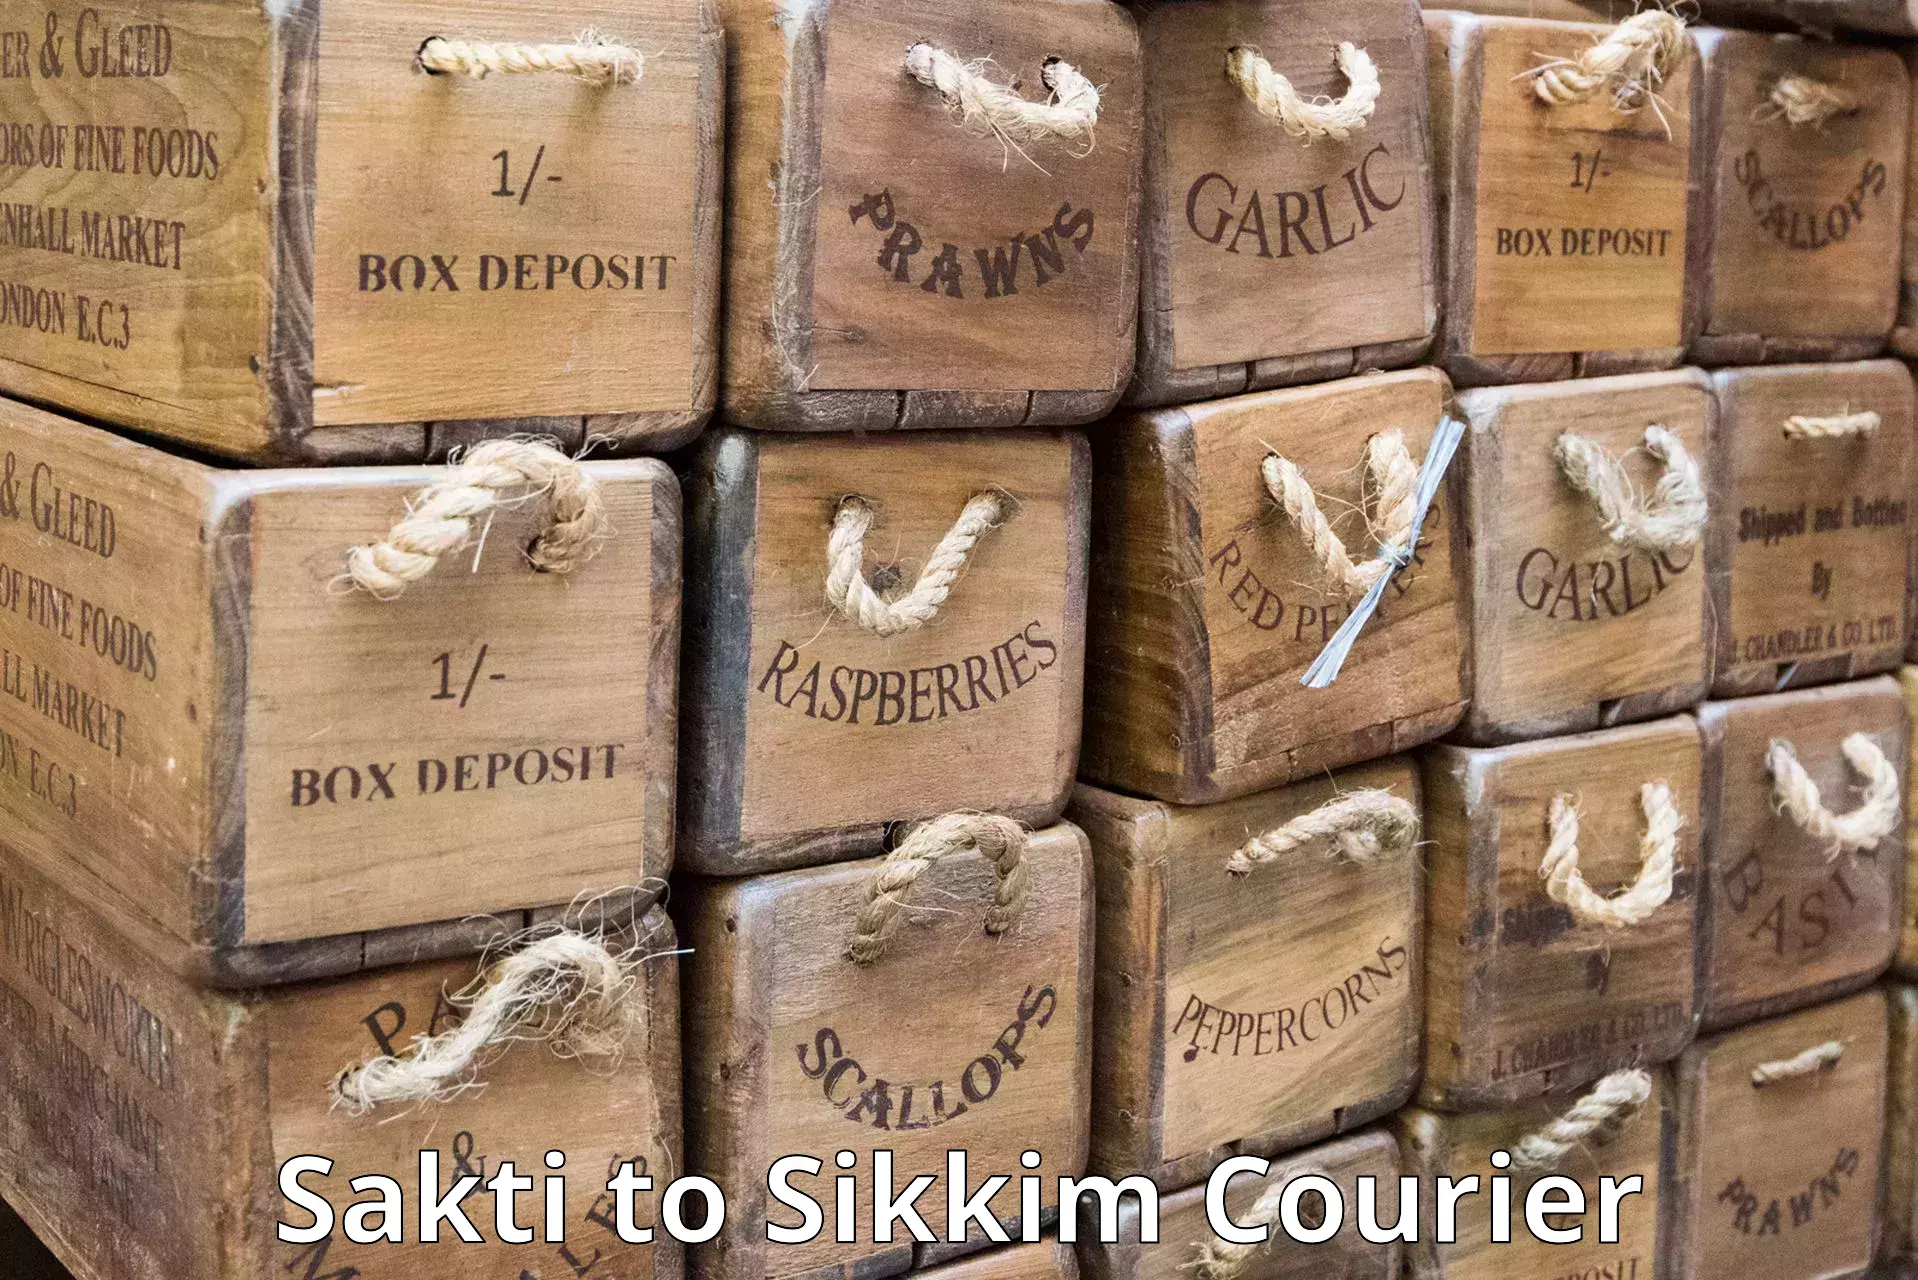 International shipping rates Sakti to Sikkim